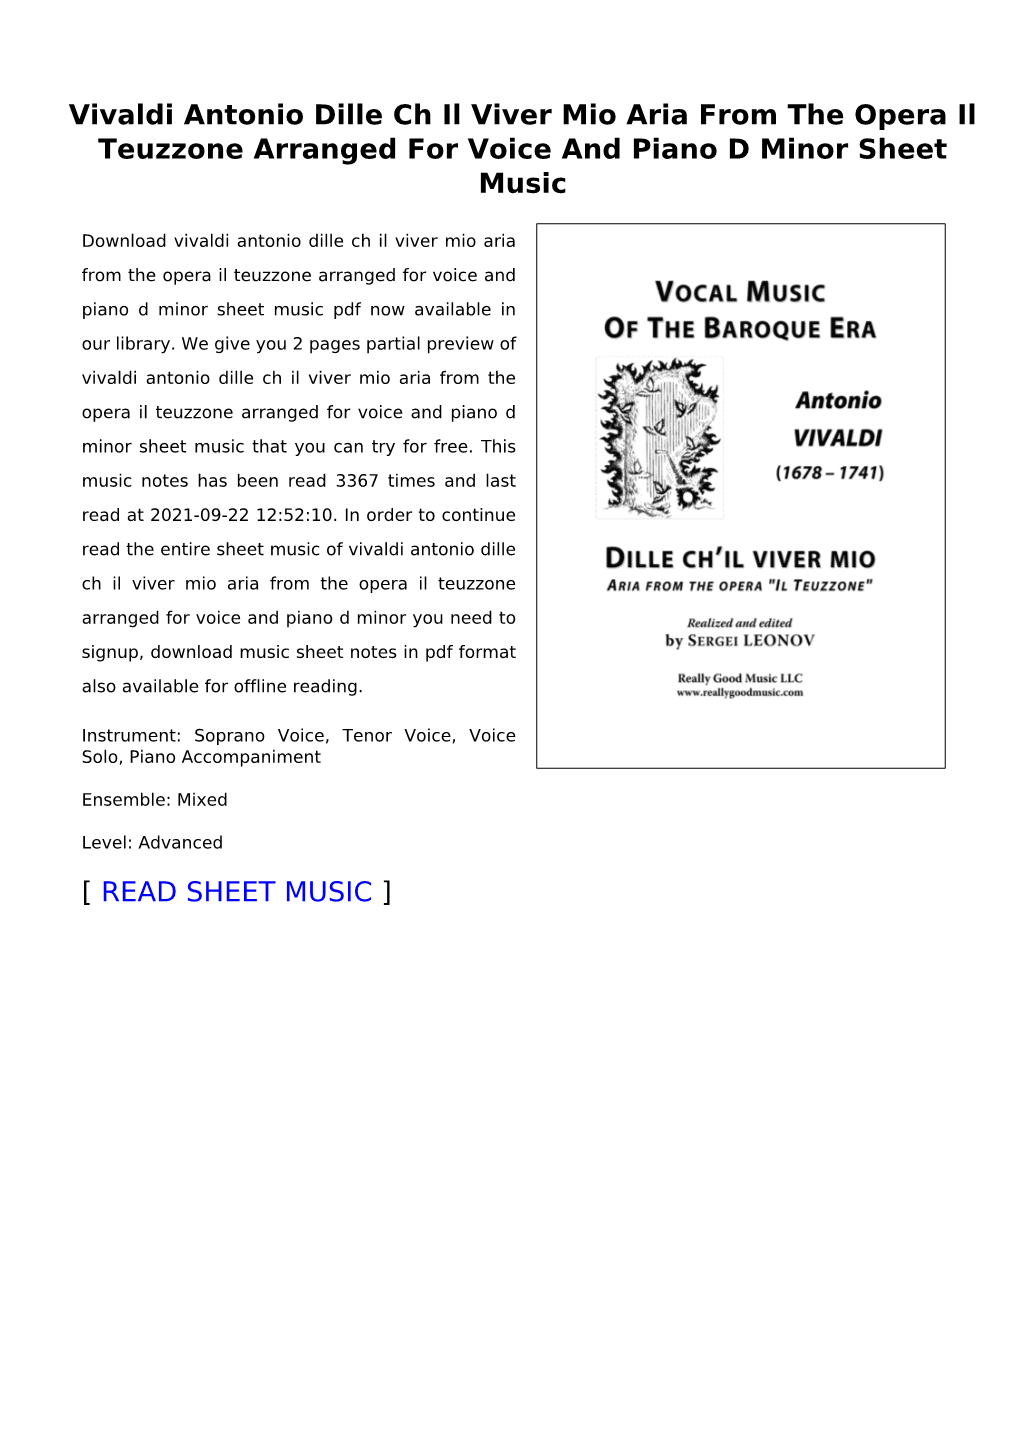 Vivaldi Antonio Dille Ch Il Viver Mio Aria from the Opera Il Teuzzone Arranged for Voice and Piano D Minor Sheet Music